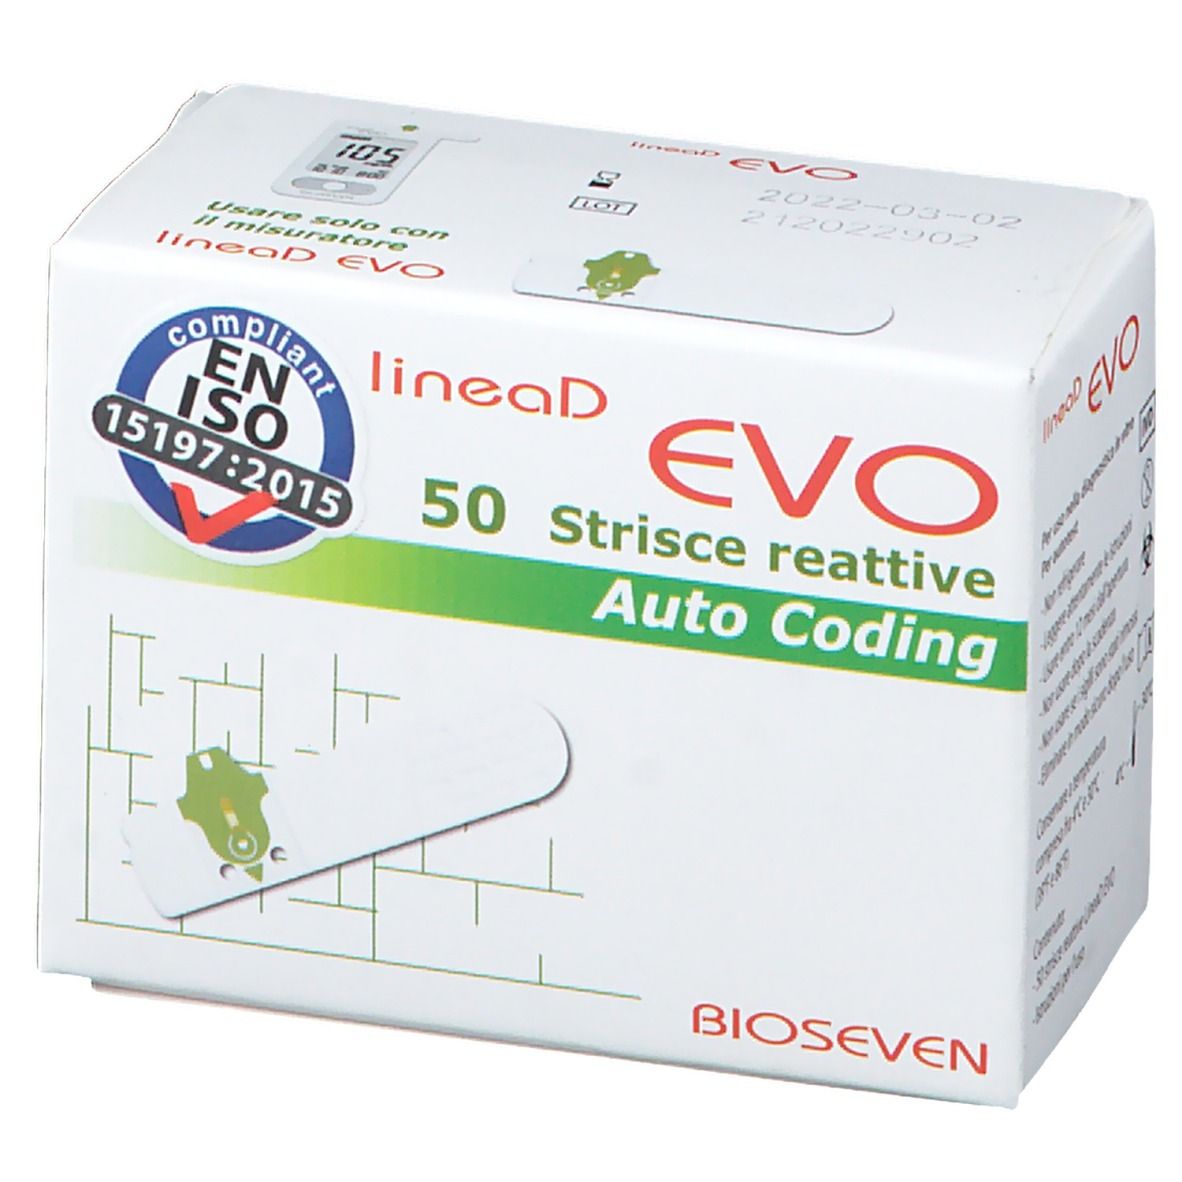 Bioseven LineaD Evo Strisce reattive Auto Coding